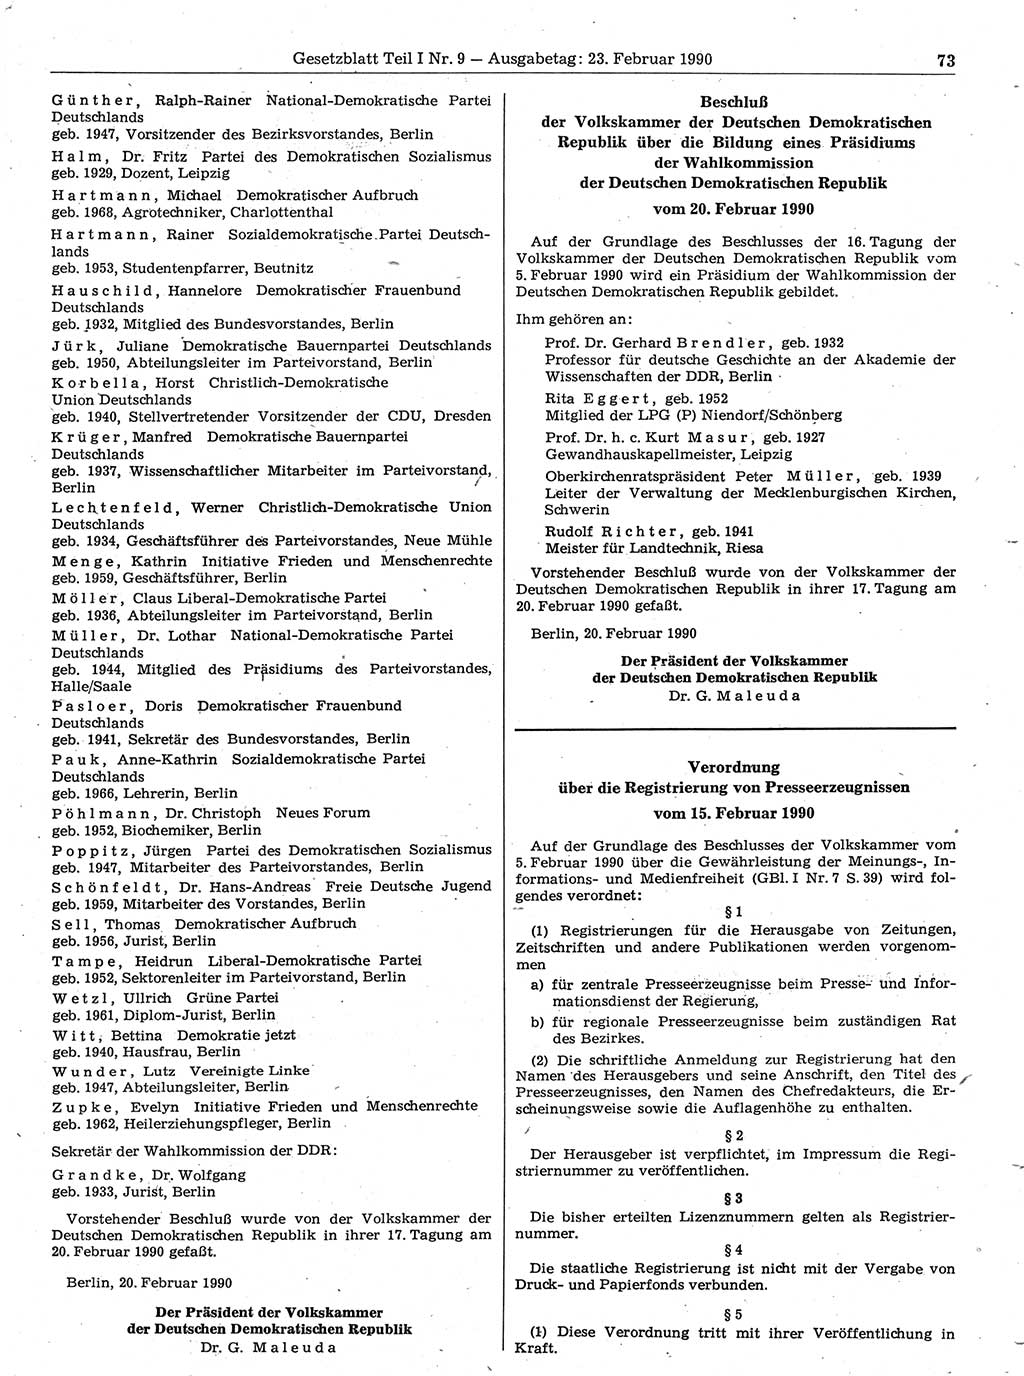 Gesetzblatt (GBl.) der Deutschen Demokratischen Republik (DDR) Teil Ⅰ 1990, Seite 73 (GBl. DDR Ⅰ 1990, S. 73)